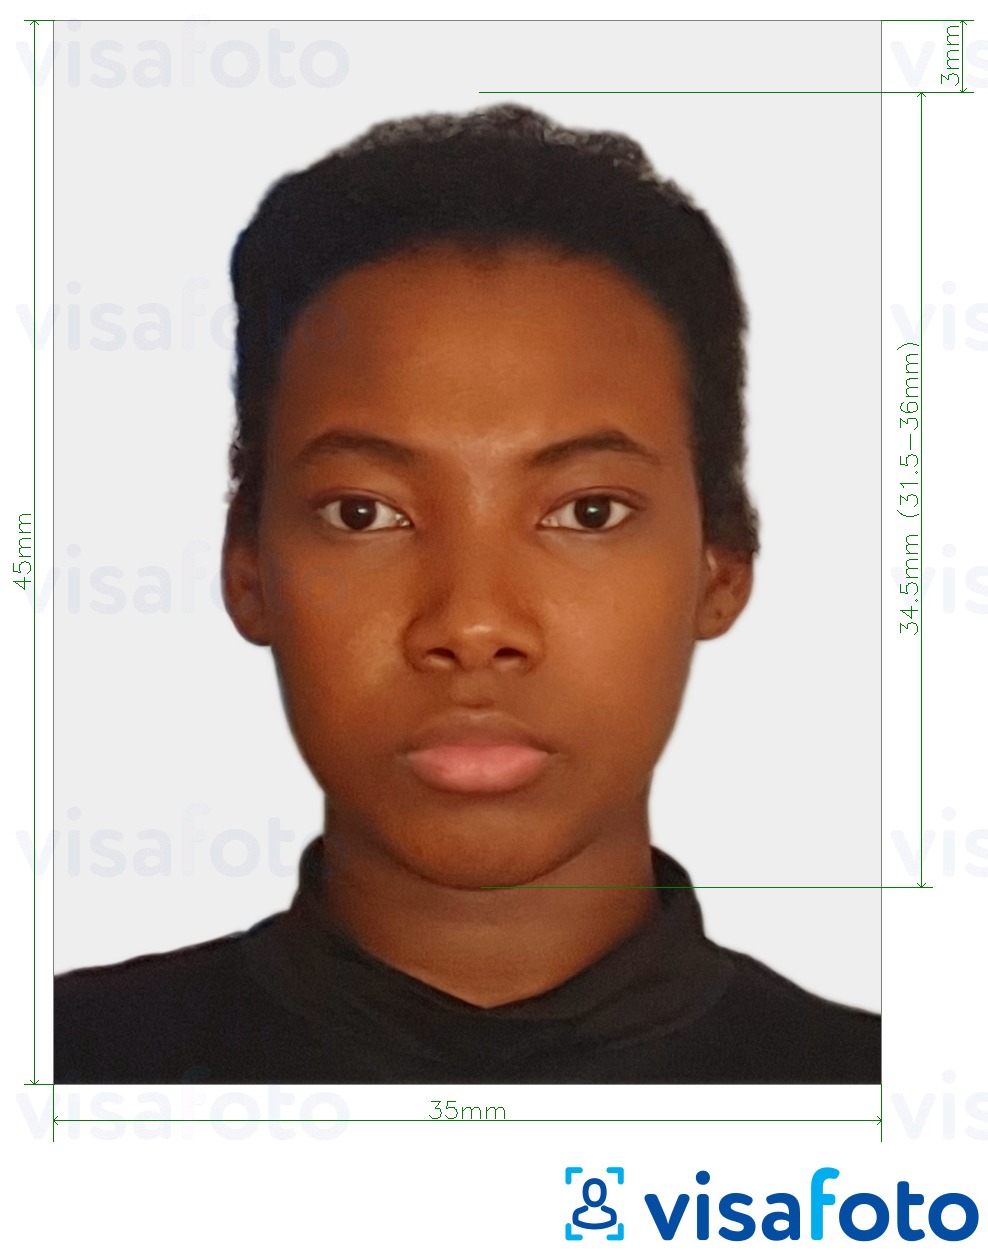 Primjer fotografije za Gabonska evisa 35x45 mm (3.5x4.5 cm) s točno određenom veličinom